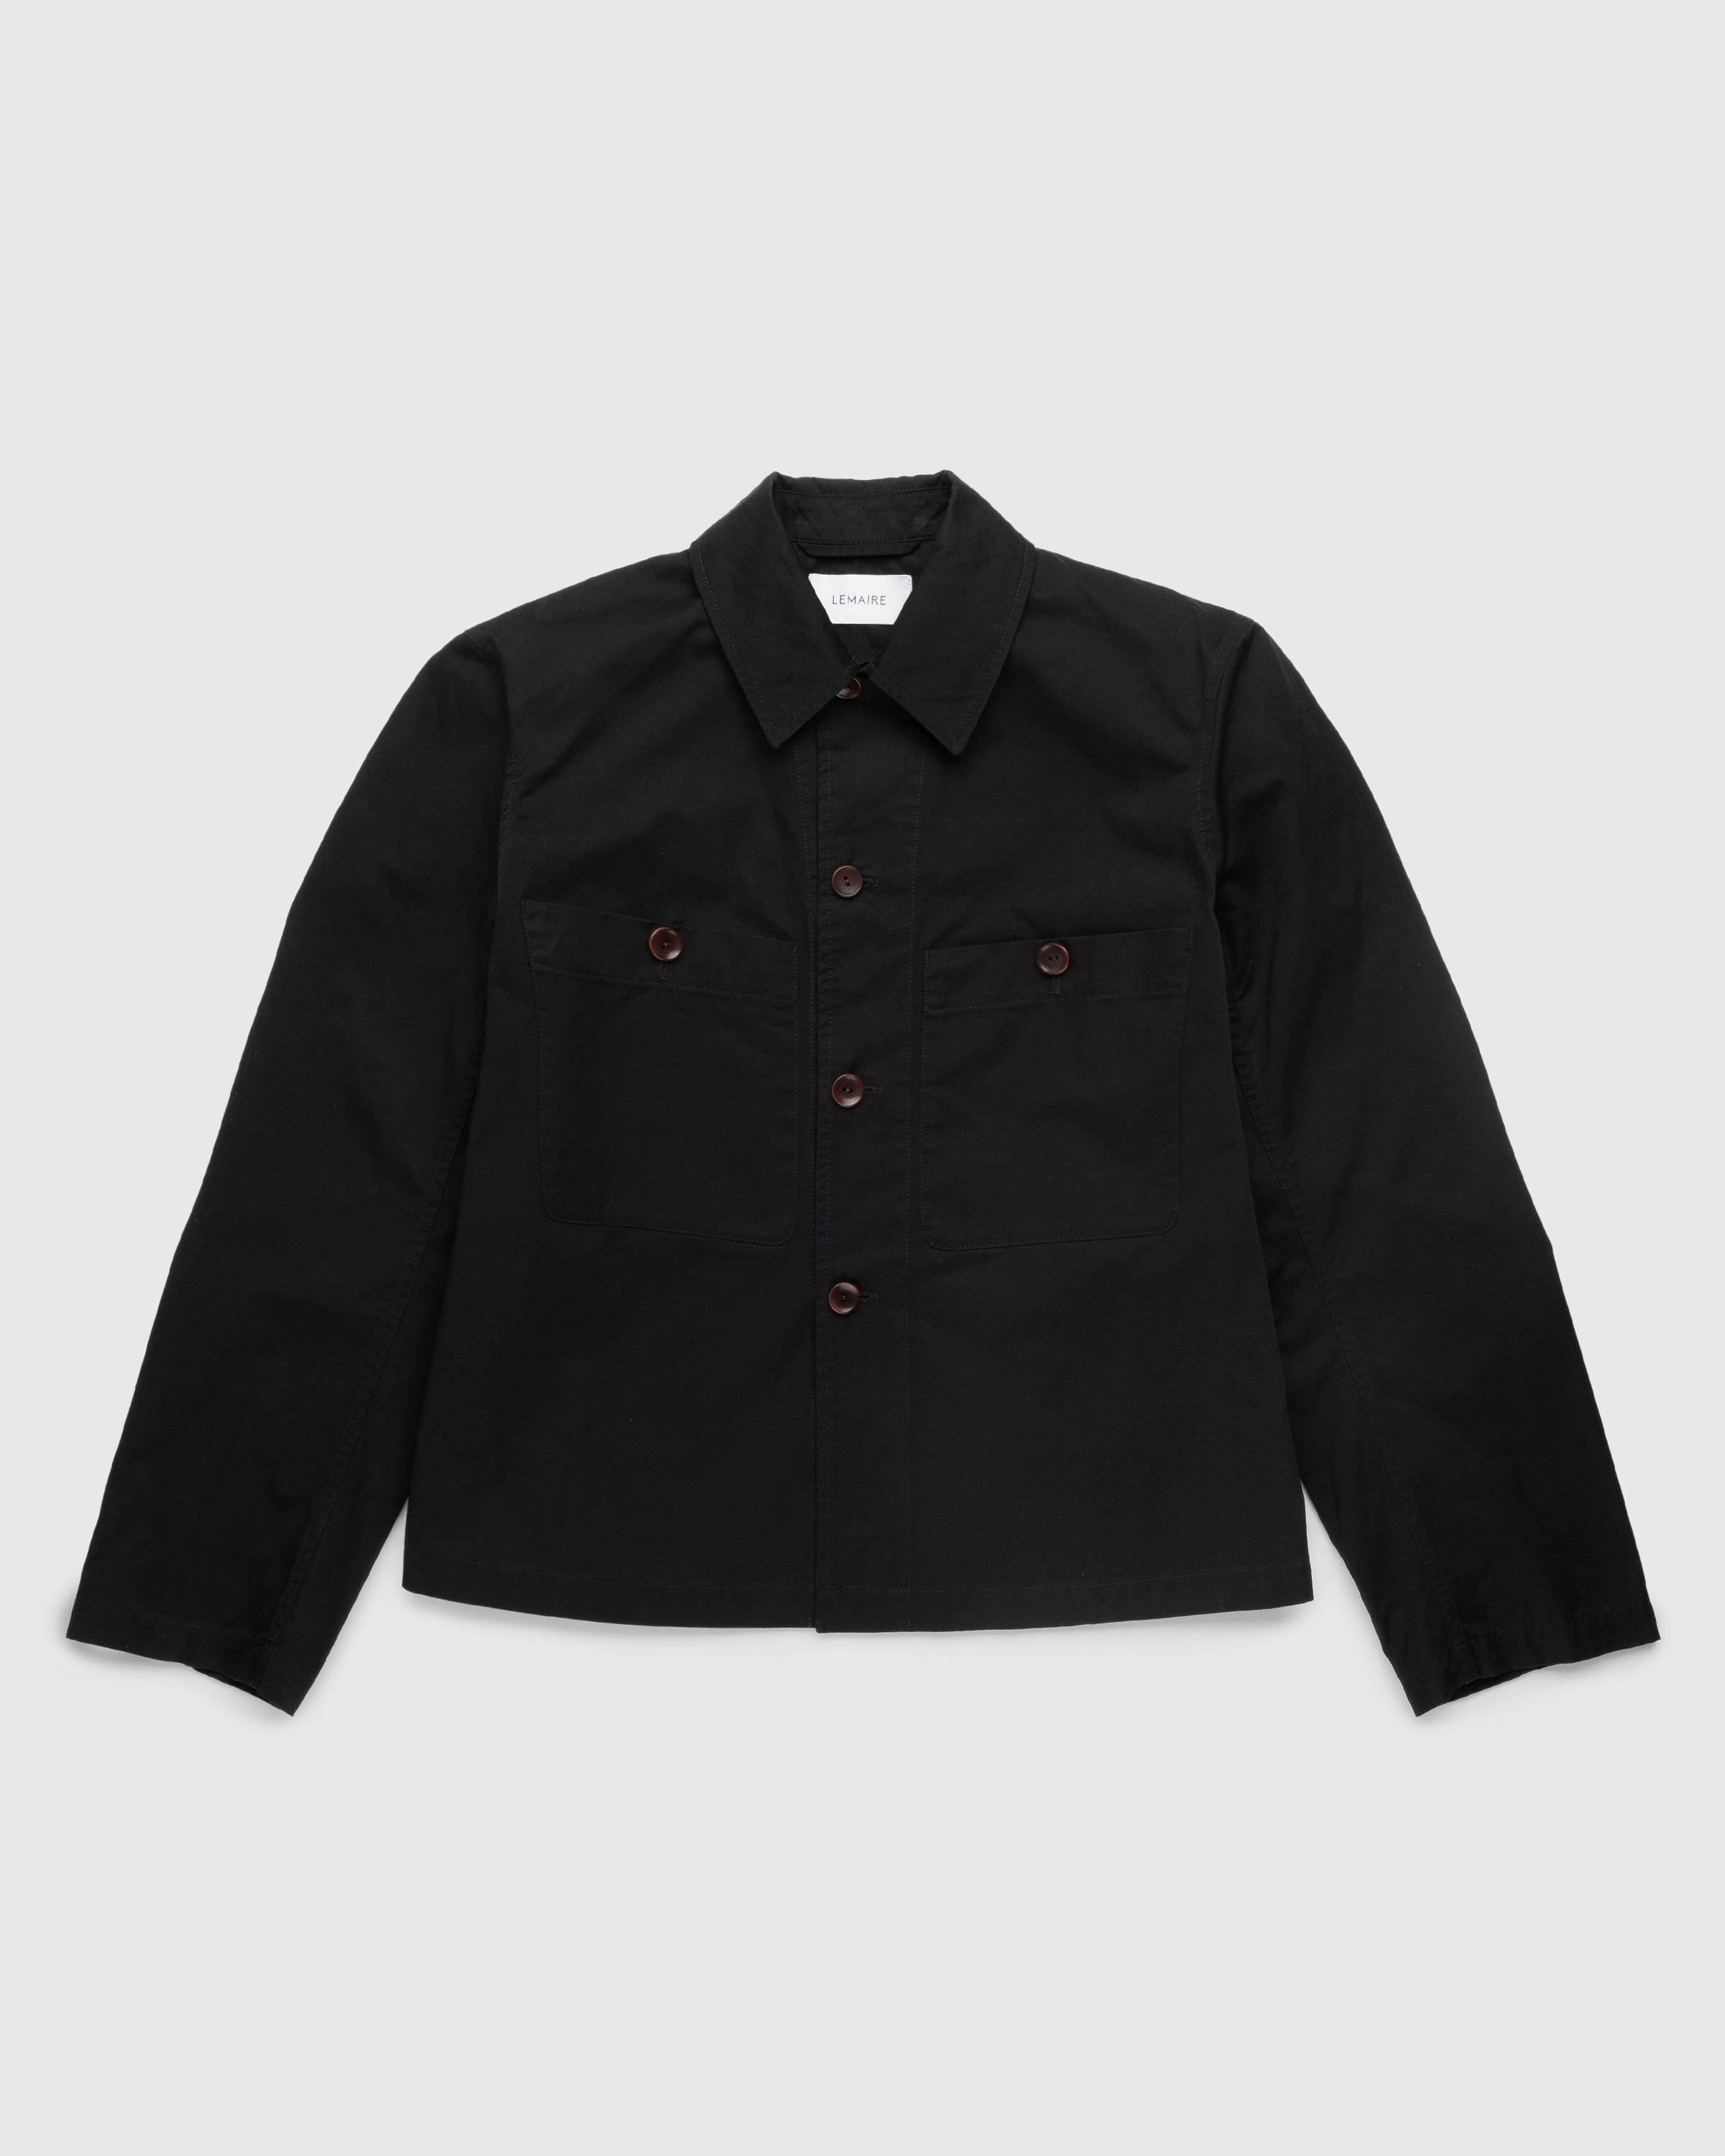 Lemaire - Military Overshirt Black - Clothing - Black - Image 1